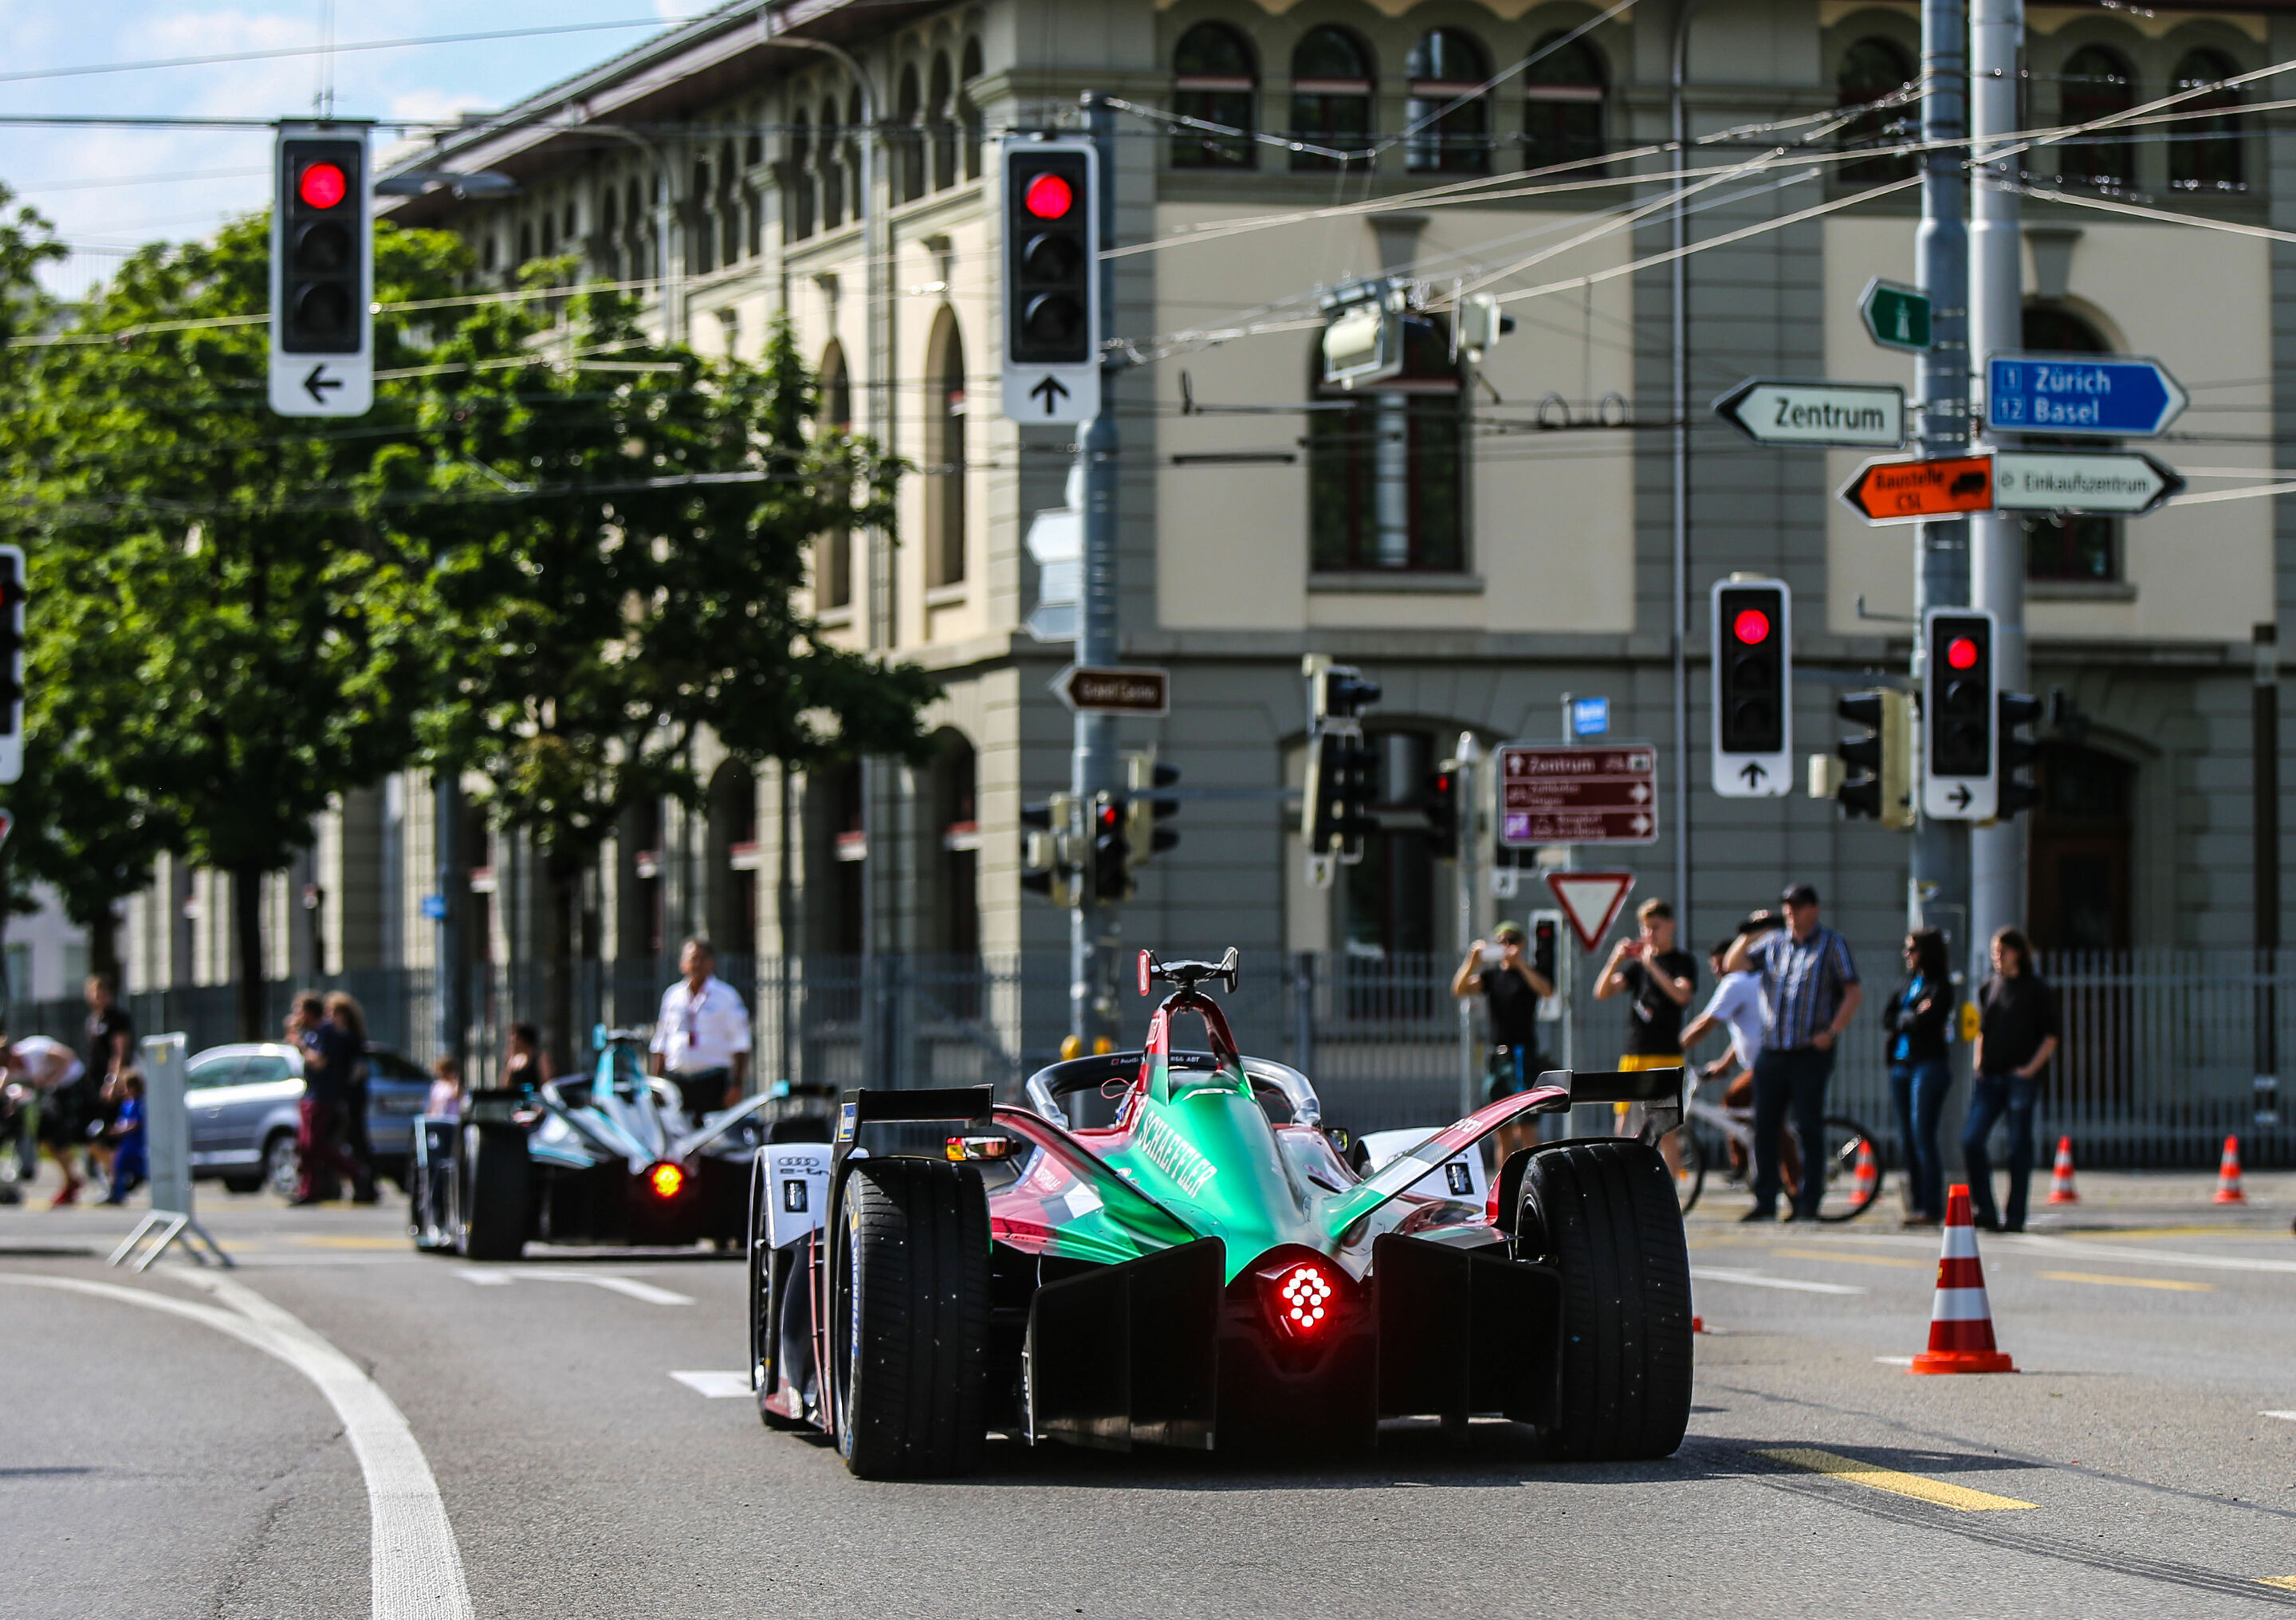 Formel E, Bern E-Prix 2019